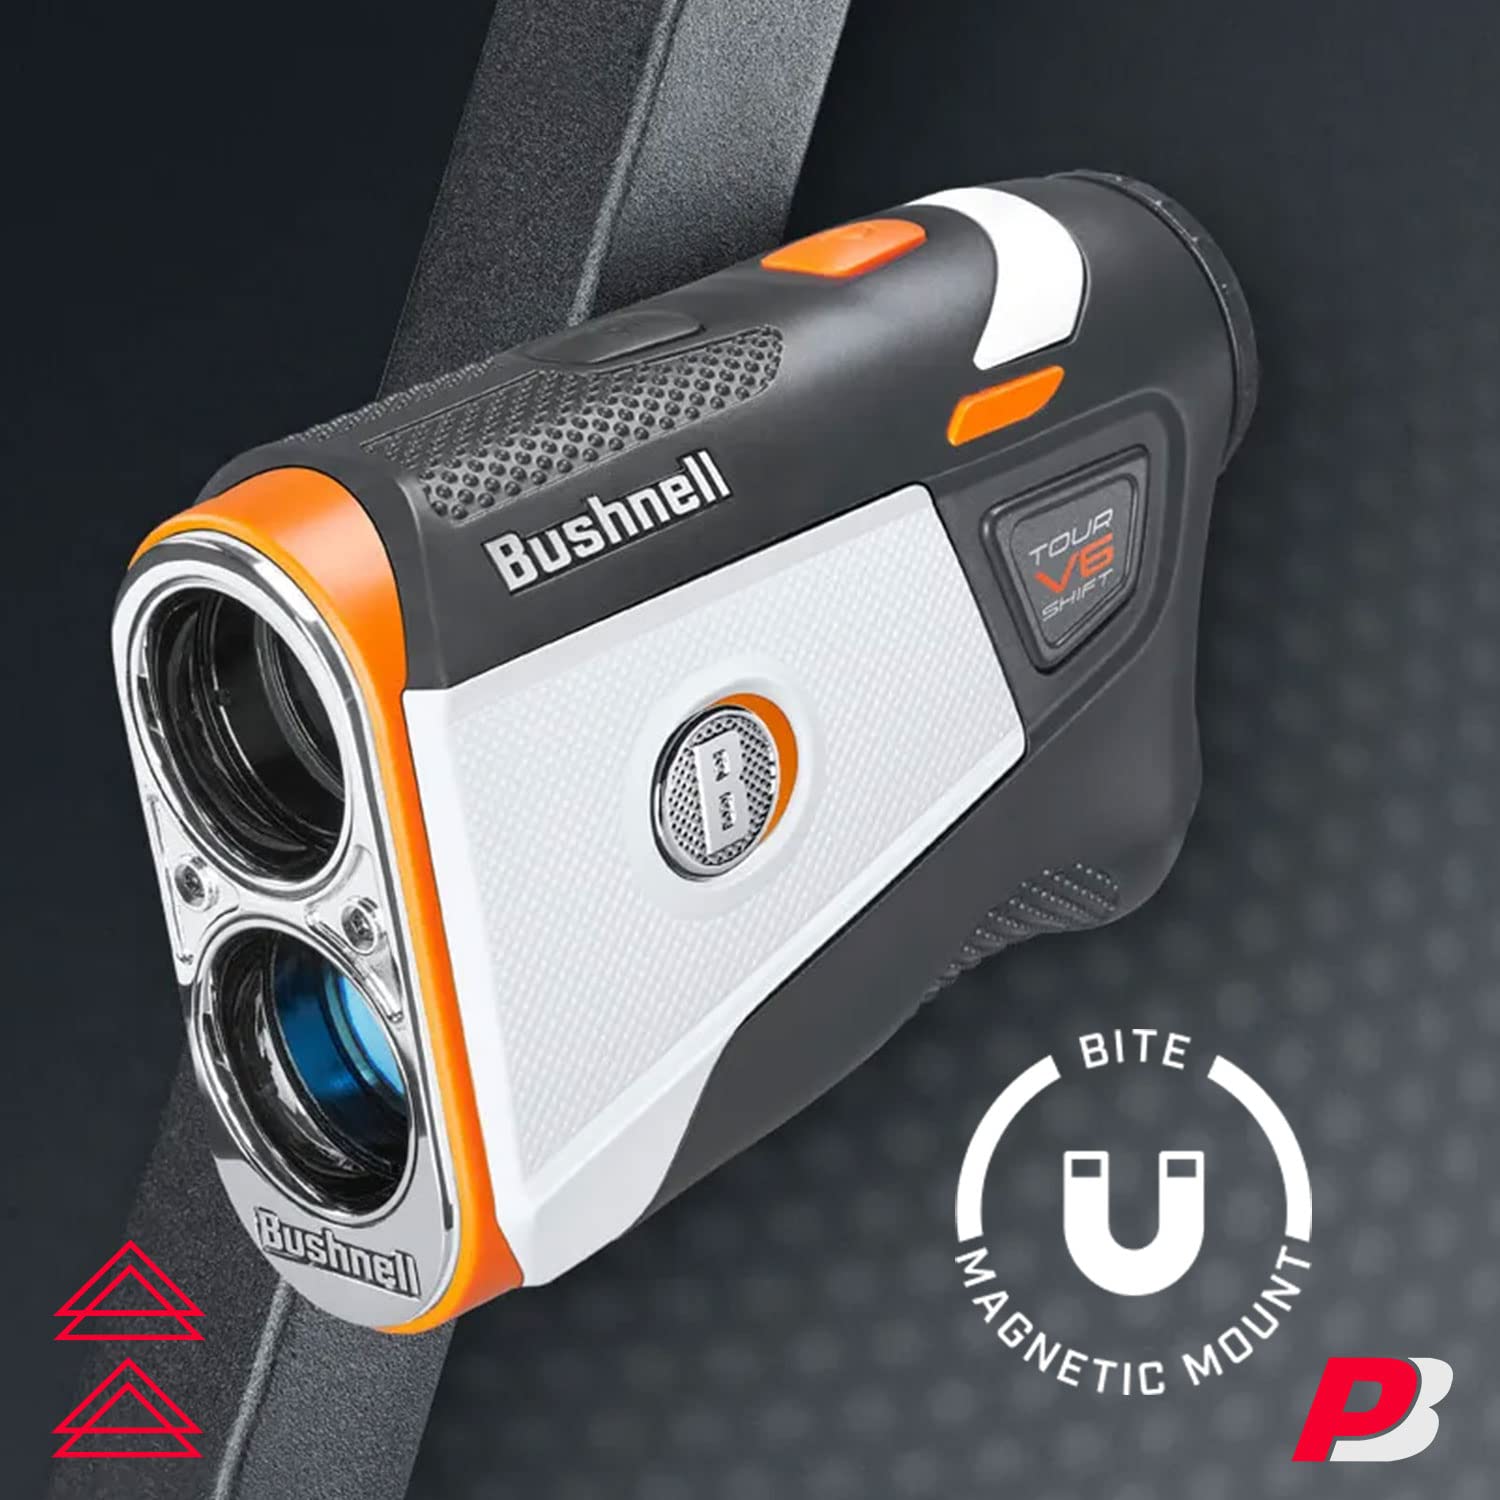 Bushnell Tour V6 / Tour V6 Shift Golf Rangefinder Bundle | PinSeeker with Visual JOLT, BITE Mount, & IPX6 Rating | with Bushnell Golf Carrying Case, Microfiber Towel, 2 CR2 Batteries, & More